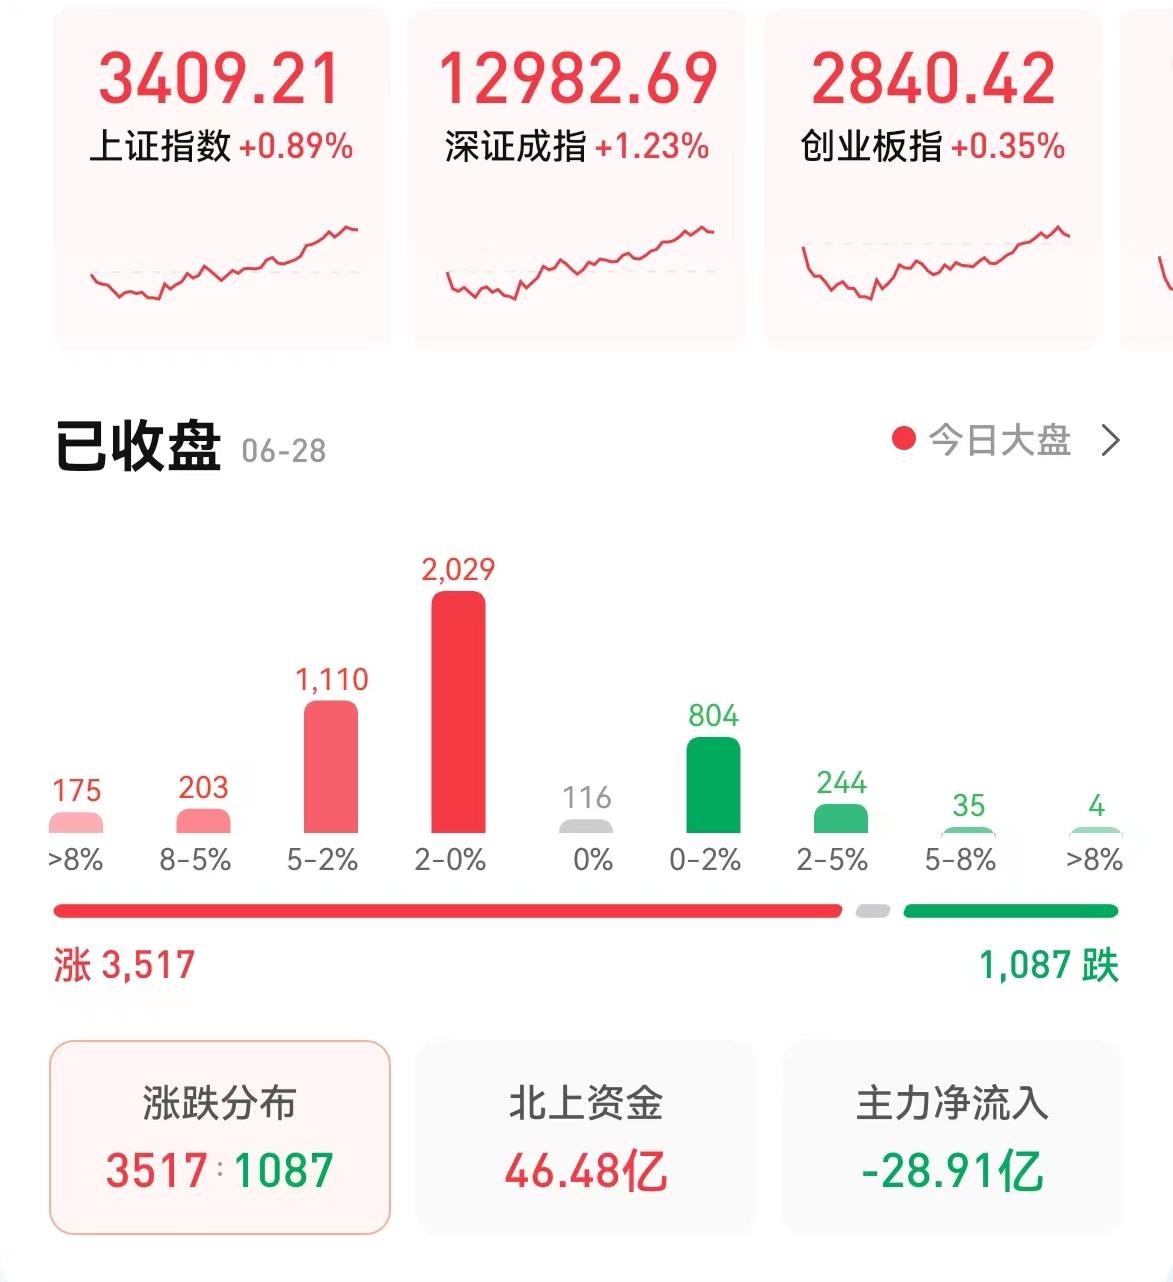 “沪指四连阳成功站上3400点 A股上涨行情能否延续？